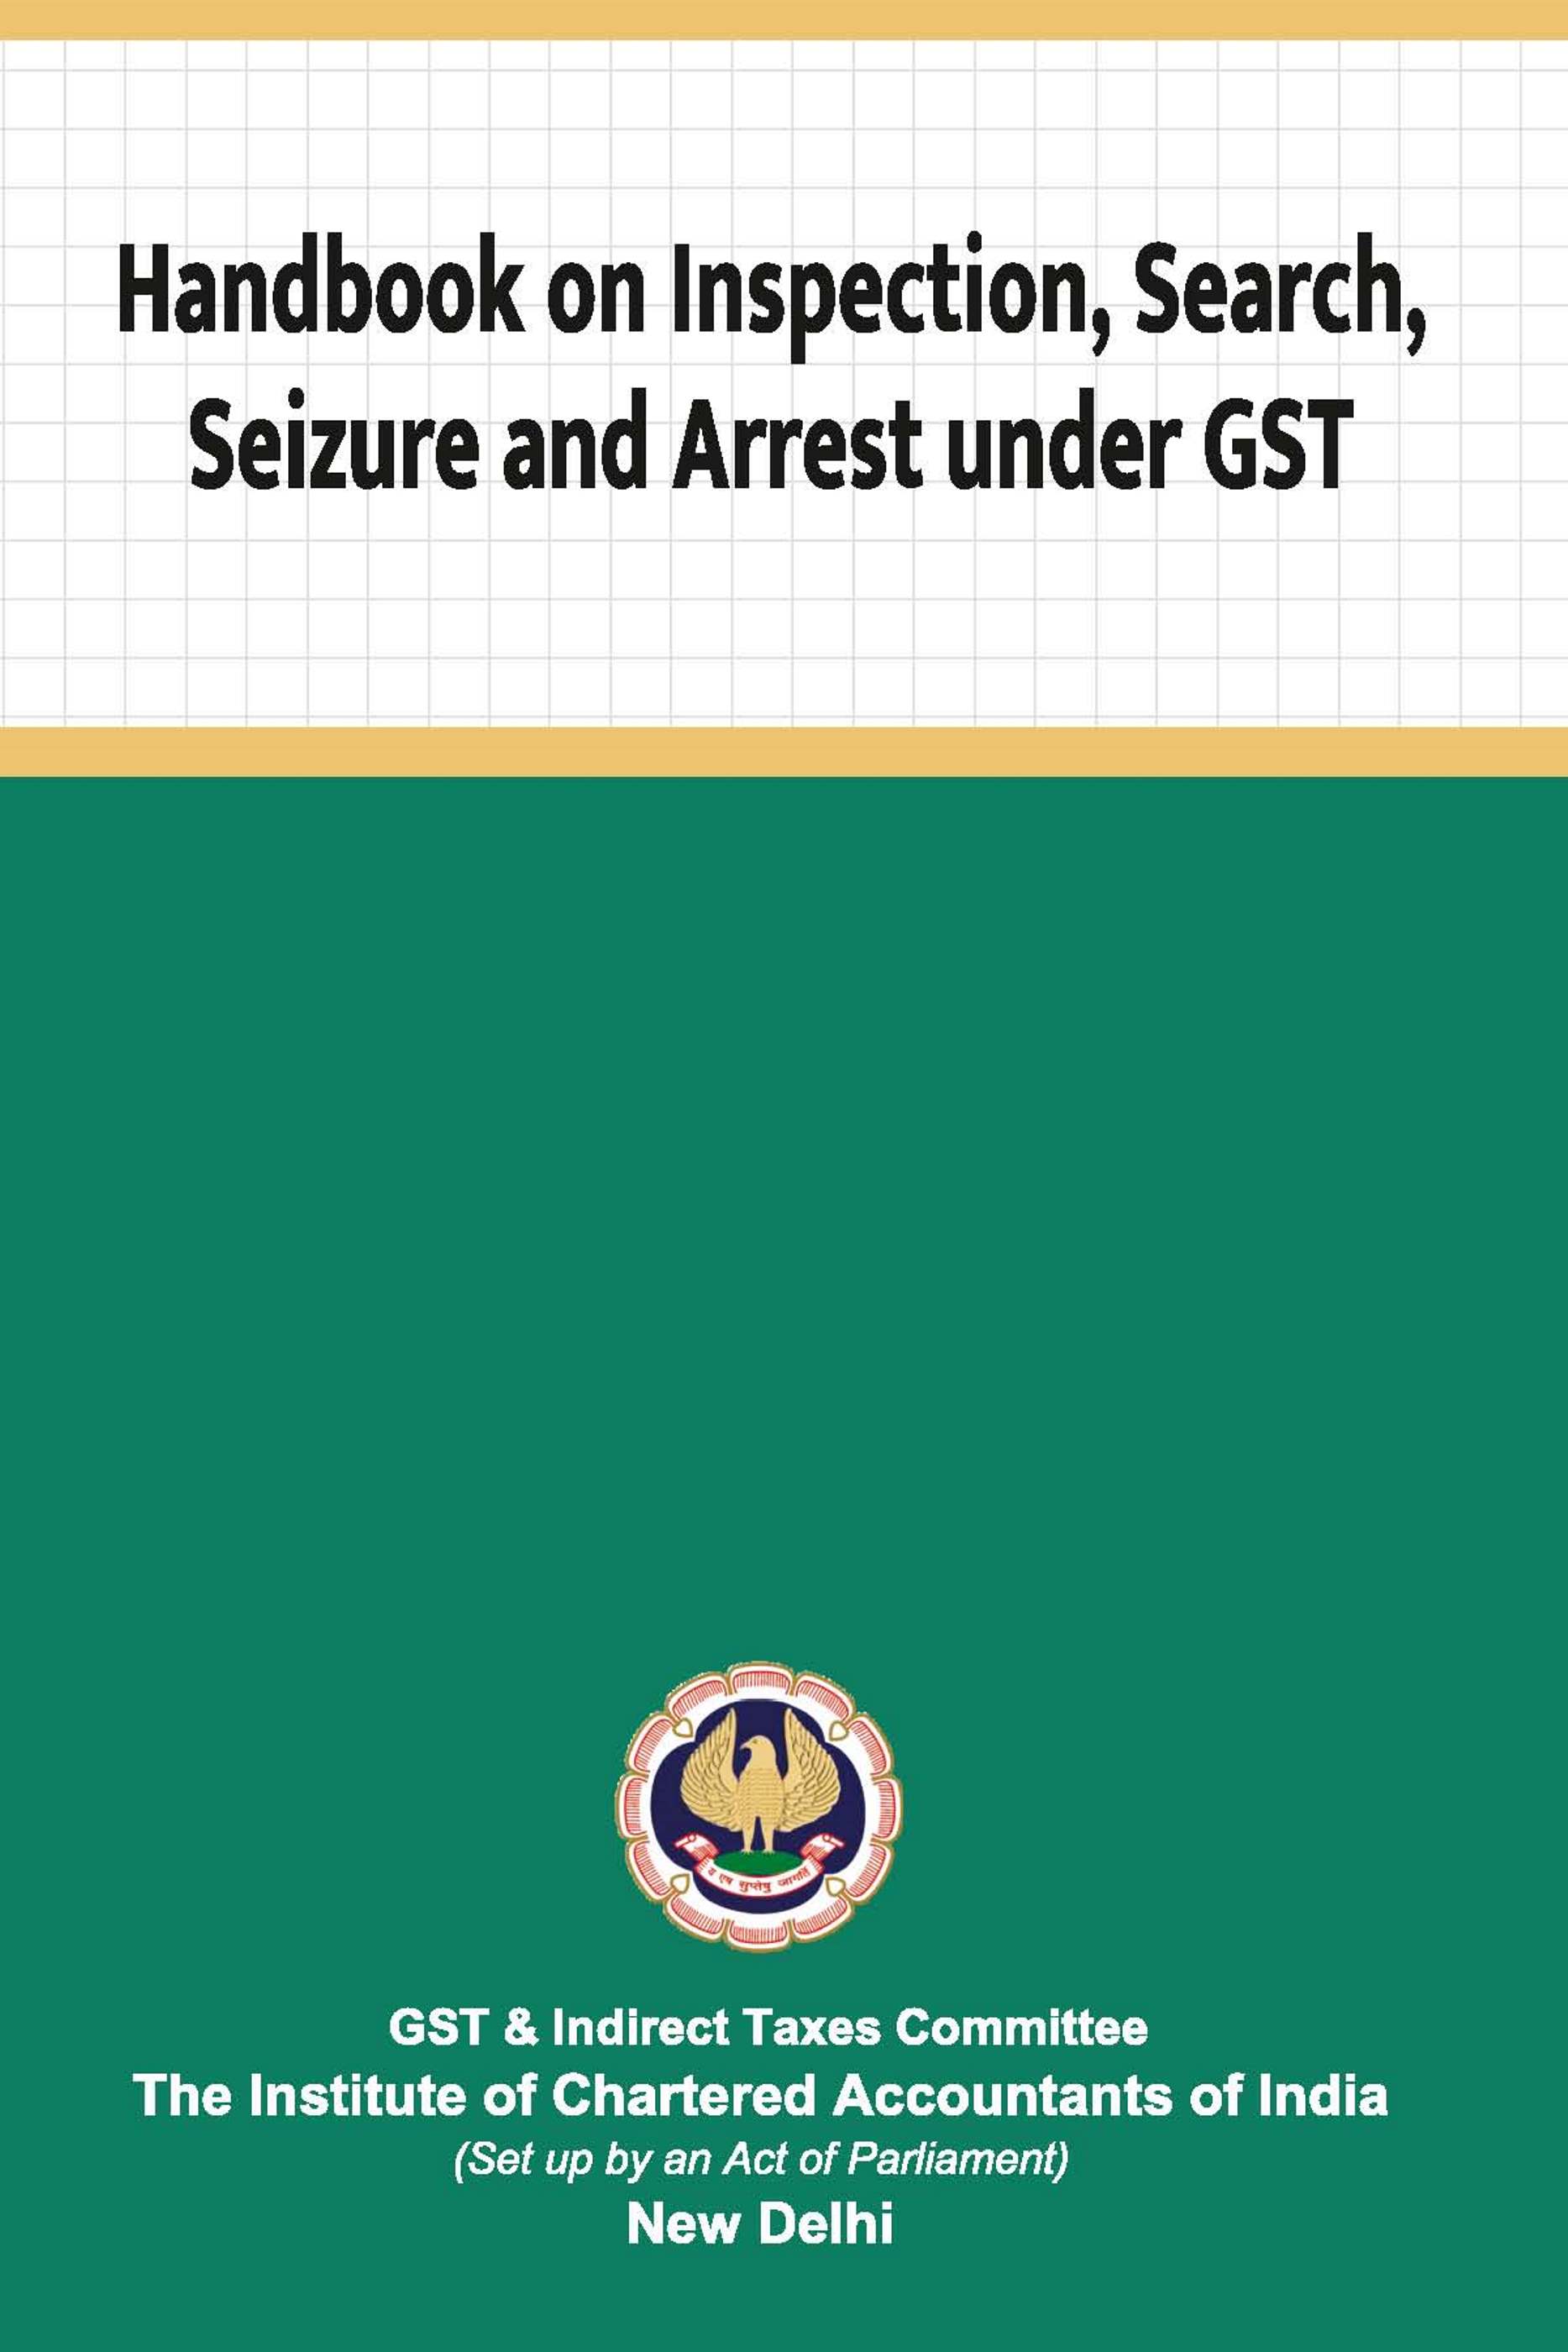 Handbook on Inspection, Search, Seizure and Arrest under GST (August 2022) - New